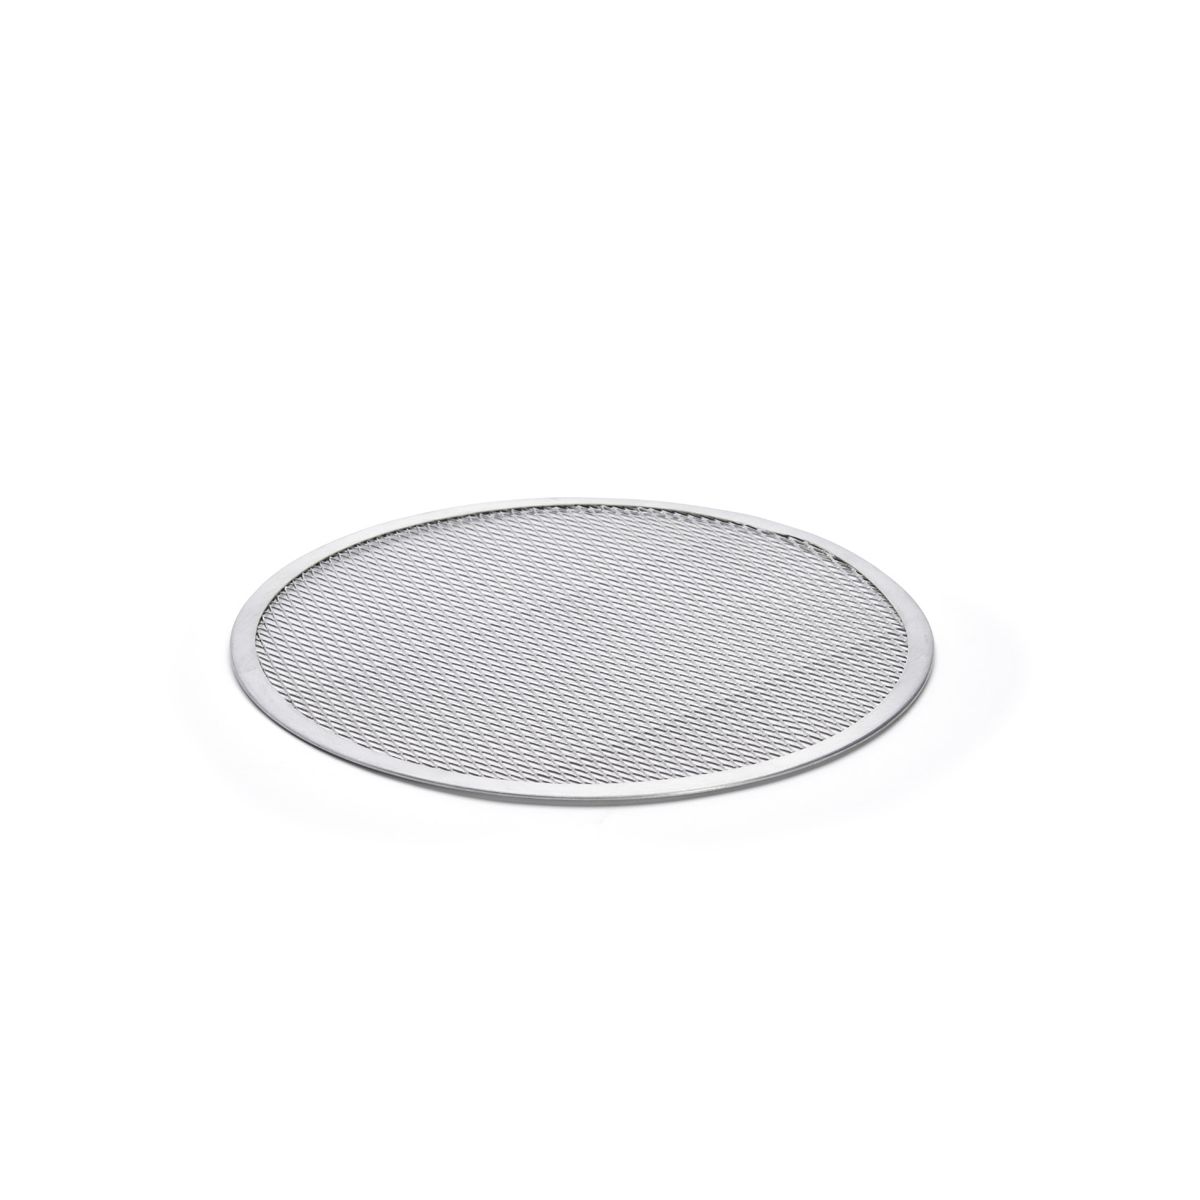 Grille de cuisson à pizza en aluminium diamètre 30 ou 33cm - GI Metal